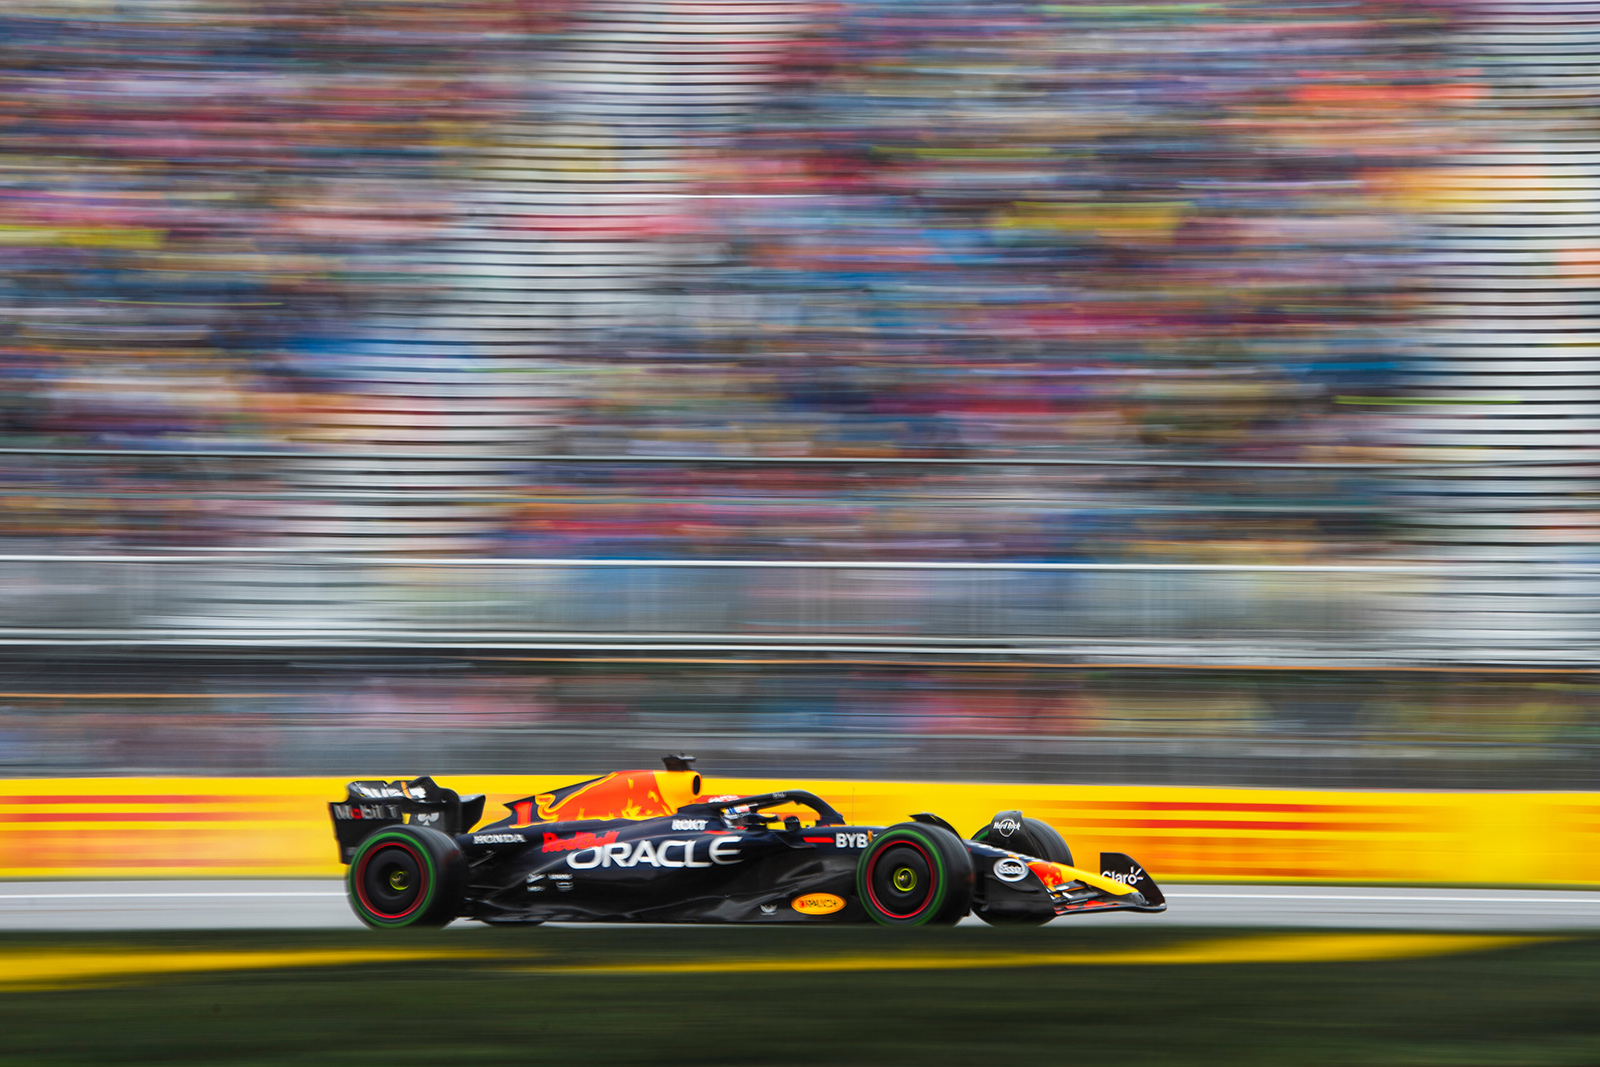 圖4：Red Bull荷蘭車手Max Verstappen駕駛著賽車RB19在賽道上參加在蒙特婁魁北克的吉爾·維倫紐夫賽道上舉行的加拿大大獎賽。（照片提供：Red Bull）.jpg